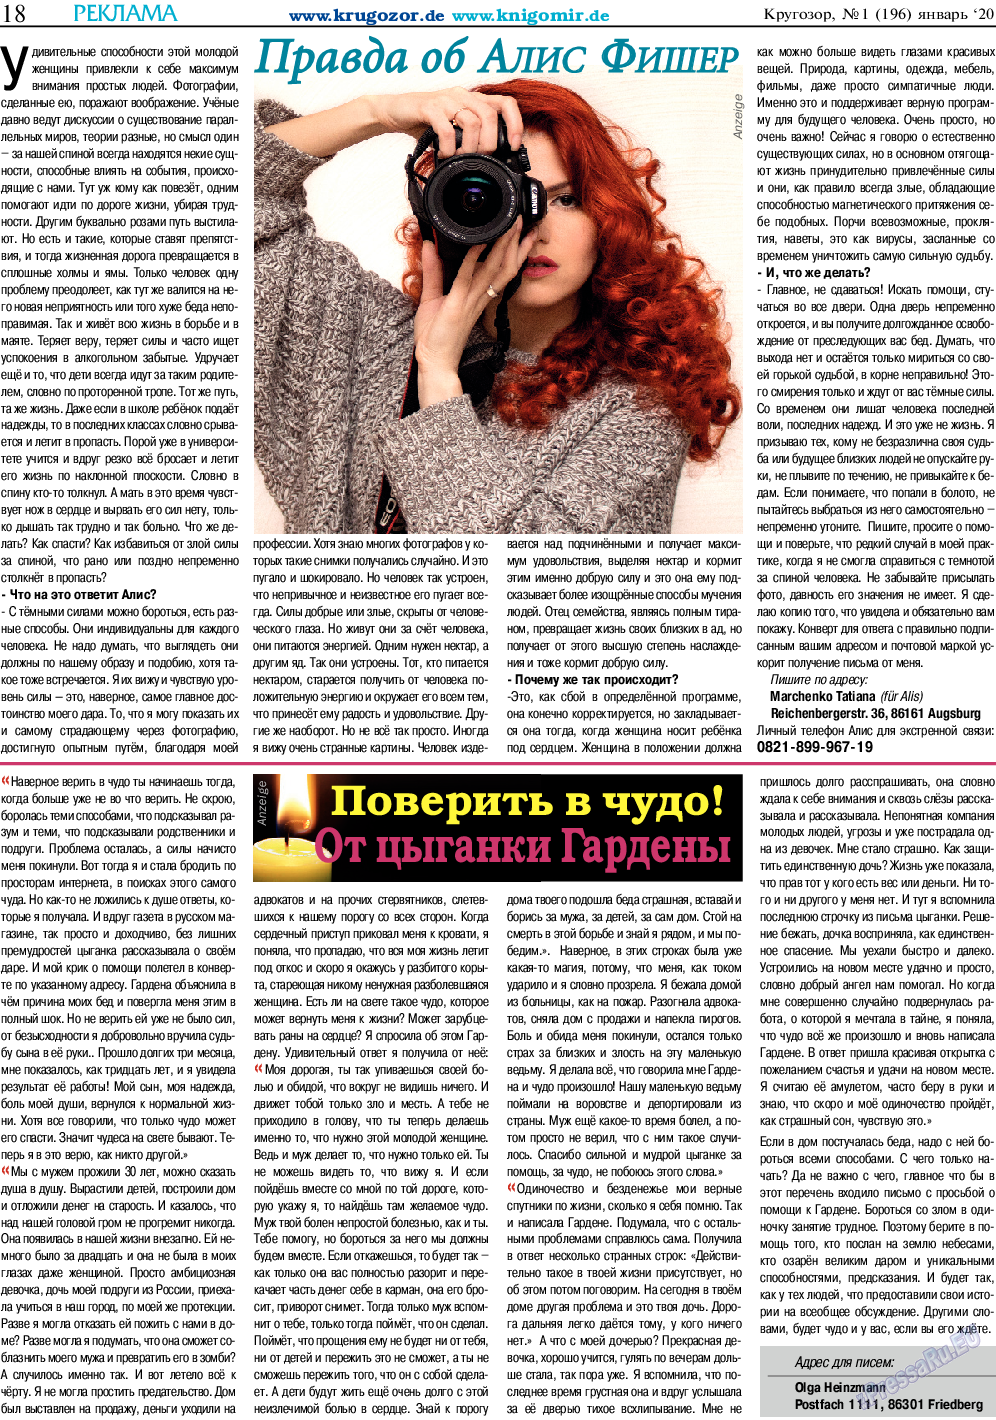 Кругозор, газета. 2020 №1 стр.18